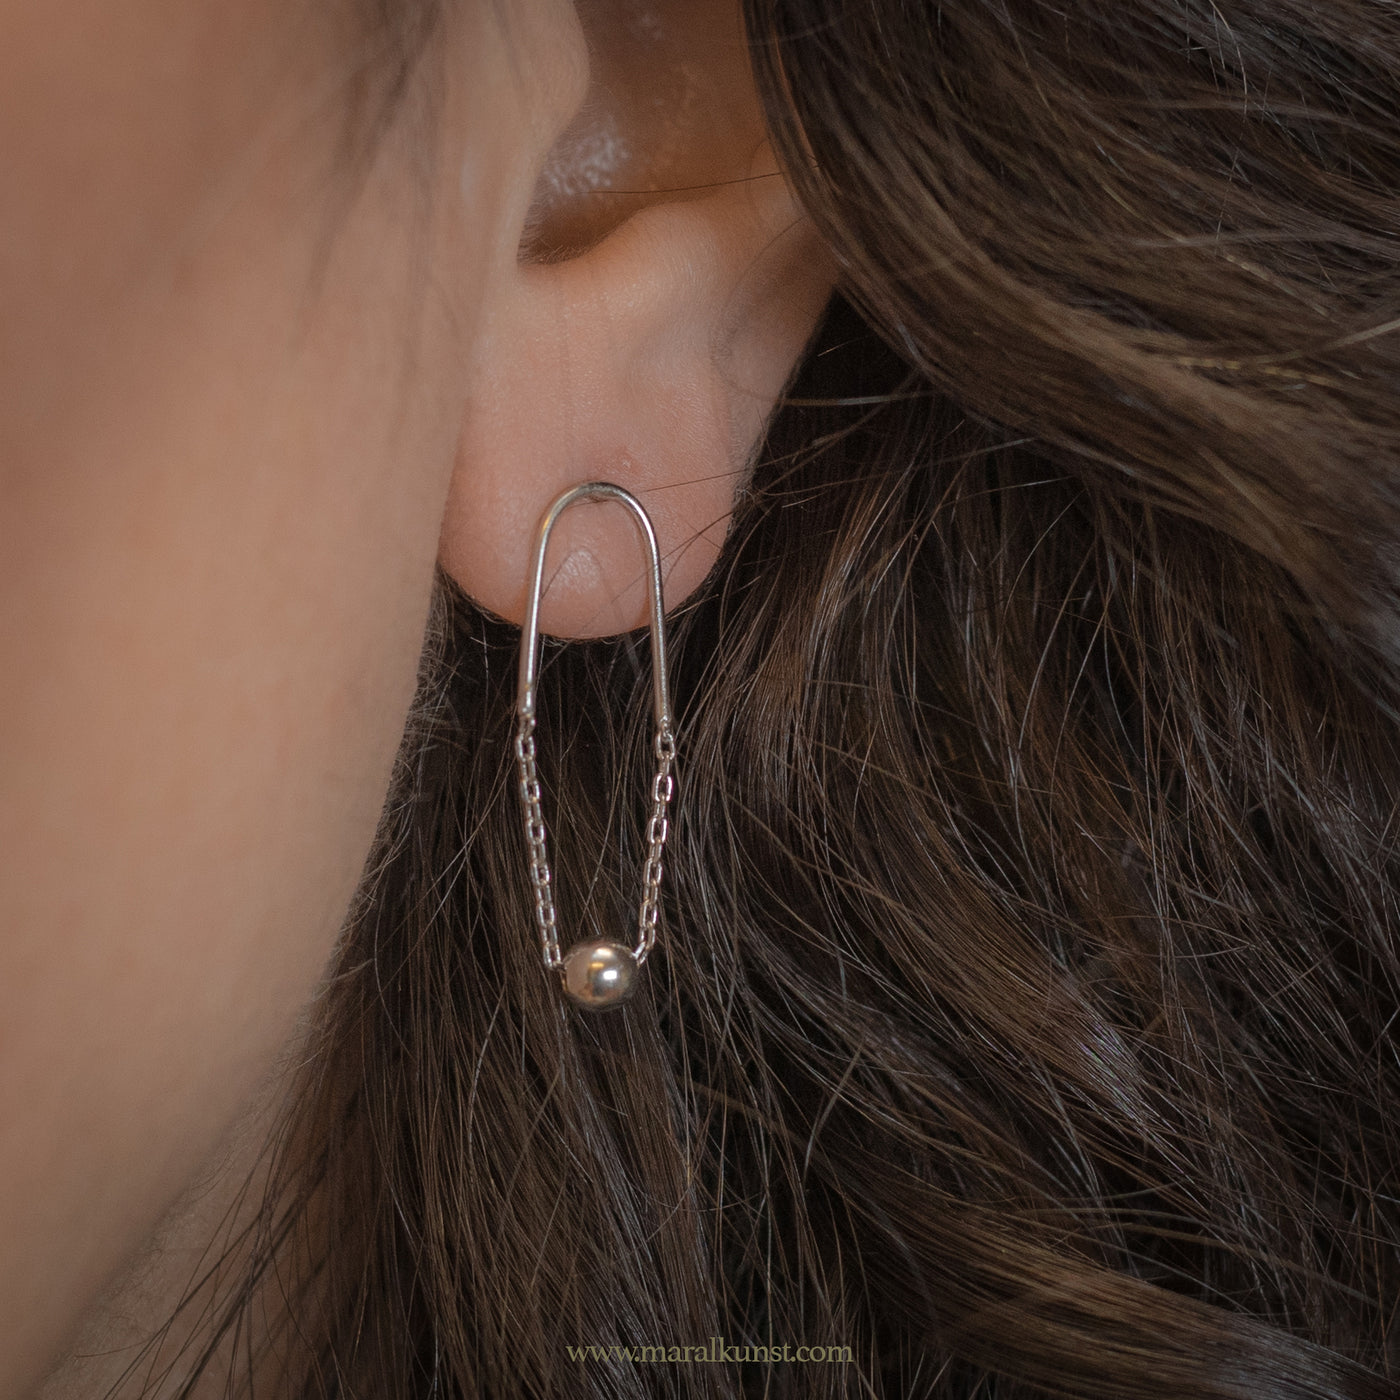 Abstract artistry Chain drop stud earrings 925 silver earrings